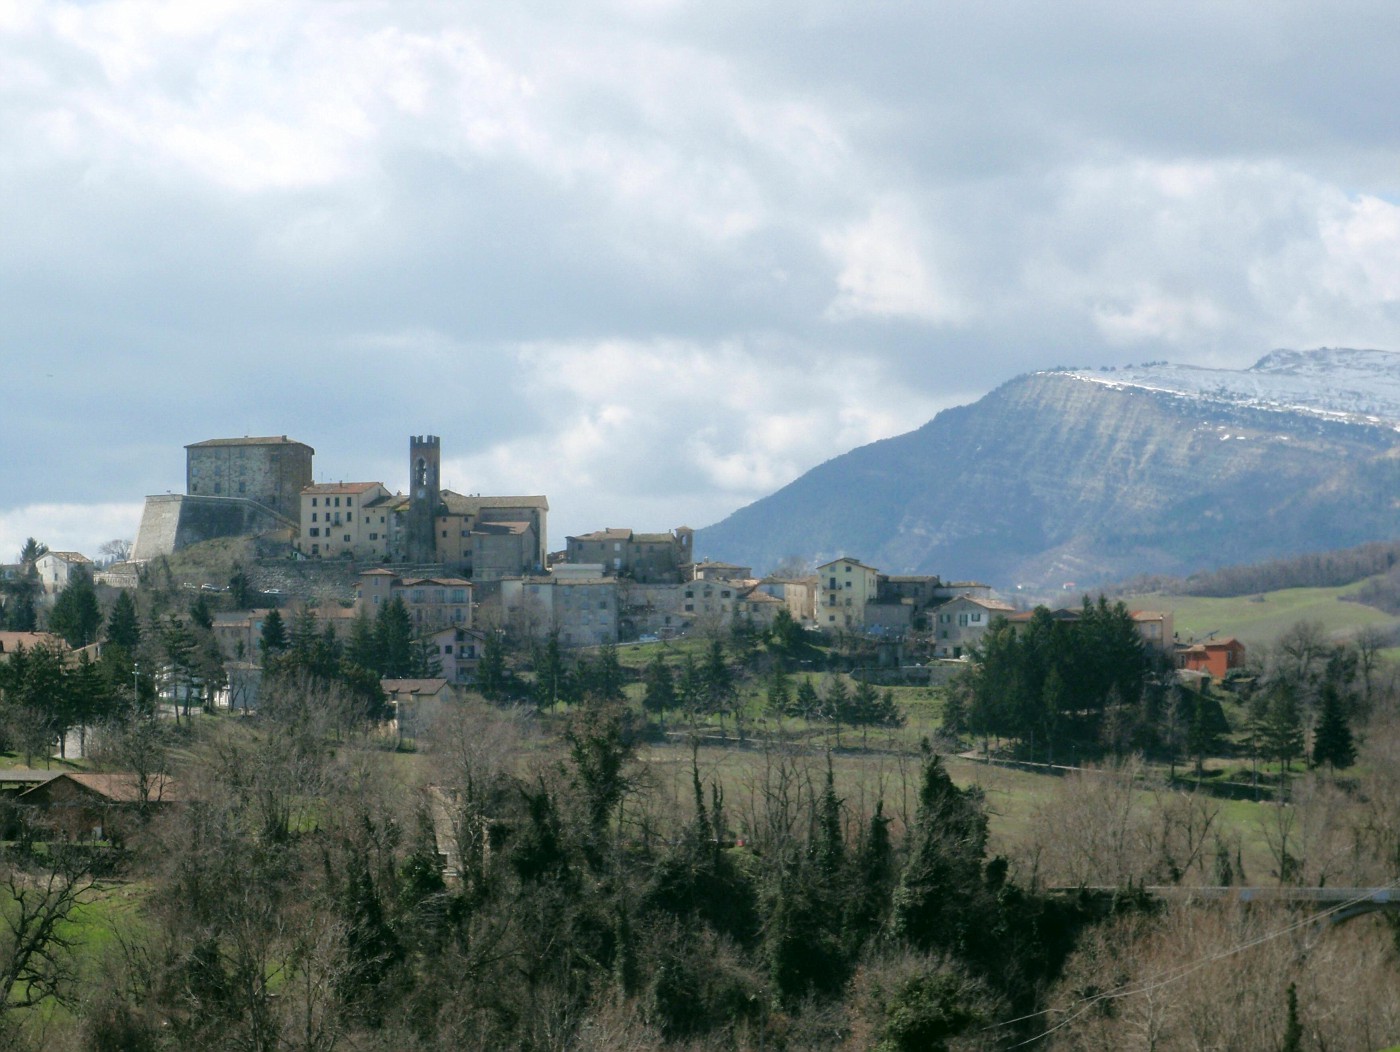 Monte Cerignone